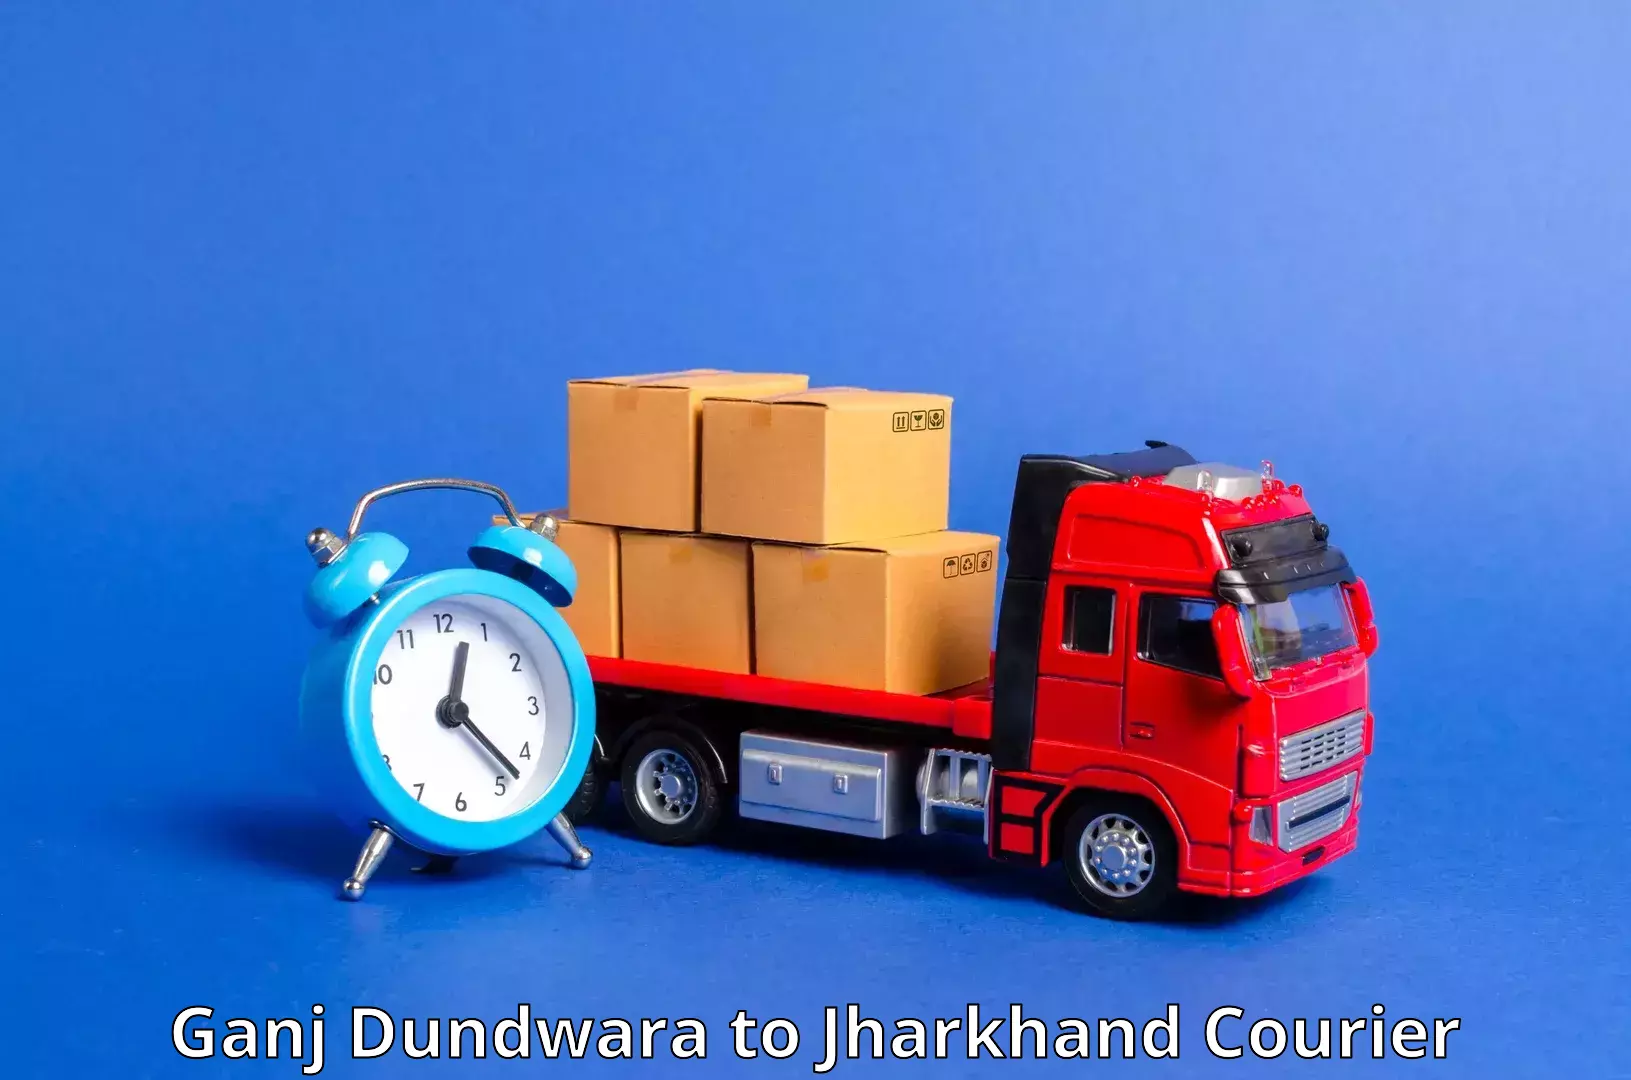 Seamless shipping service Ganj Dundwara to NIT Jamshedpur